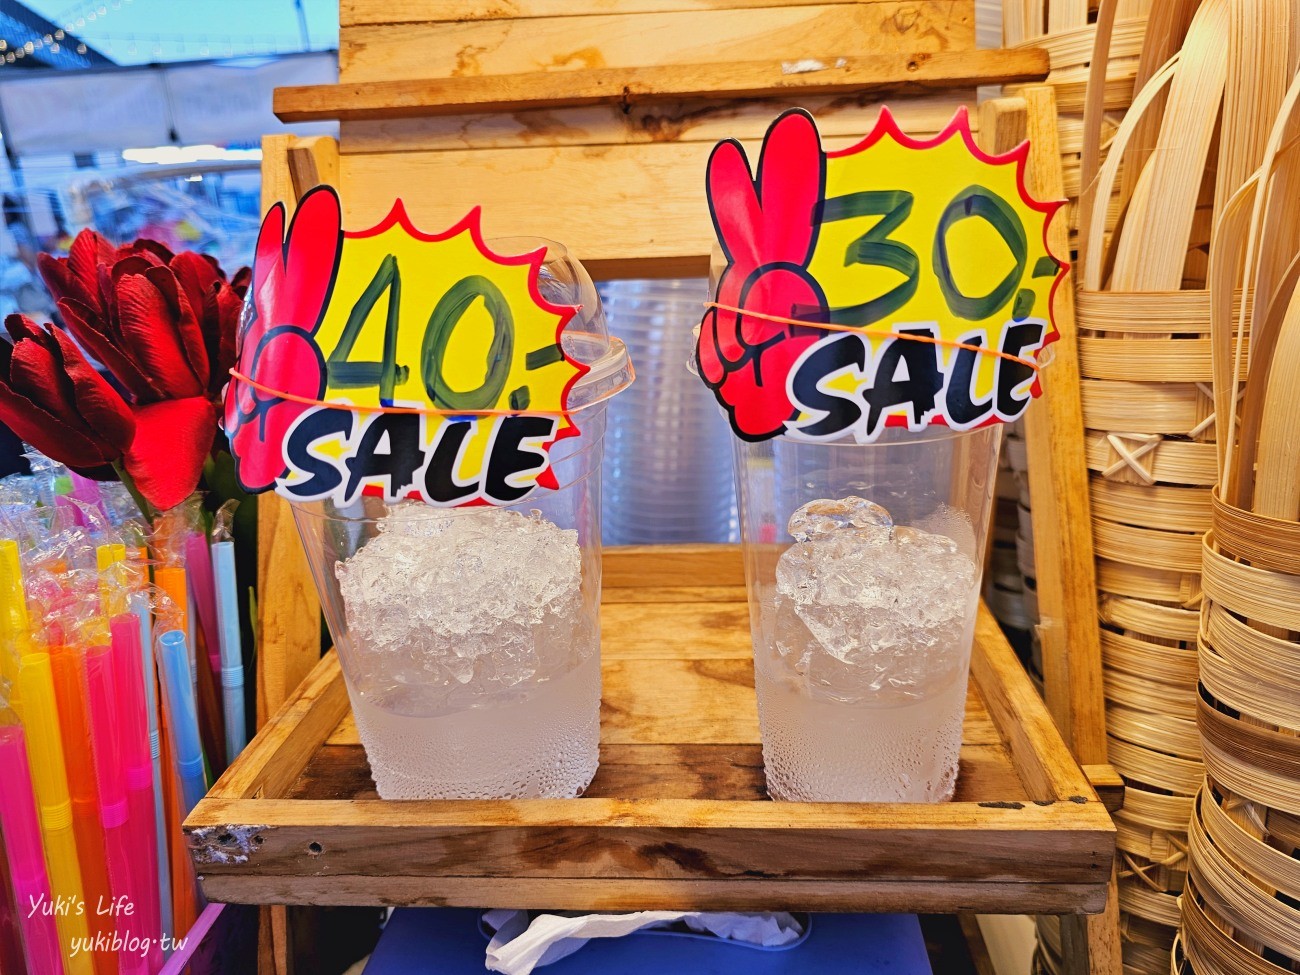 曼谷新夜市【Save One GO Market】東西便宜10泰銖超好買(交通.營業資訊) - yukiblog.tw